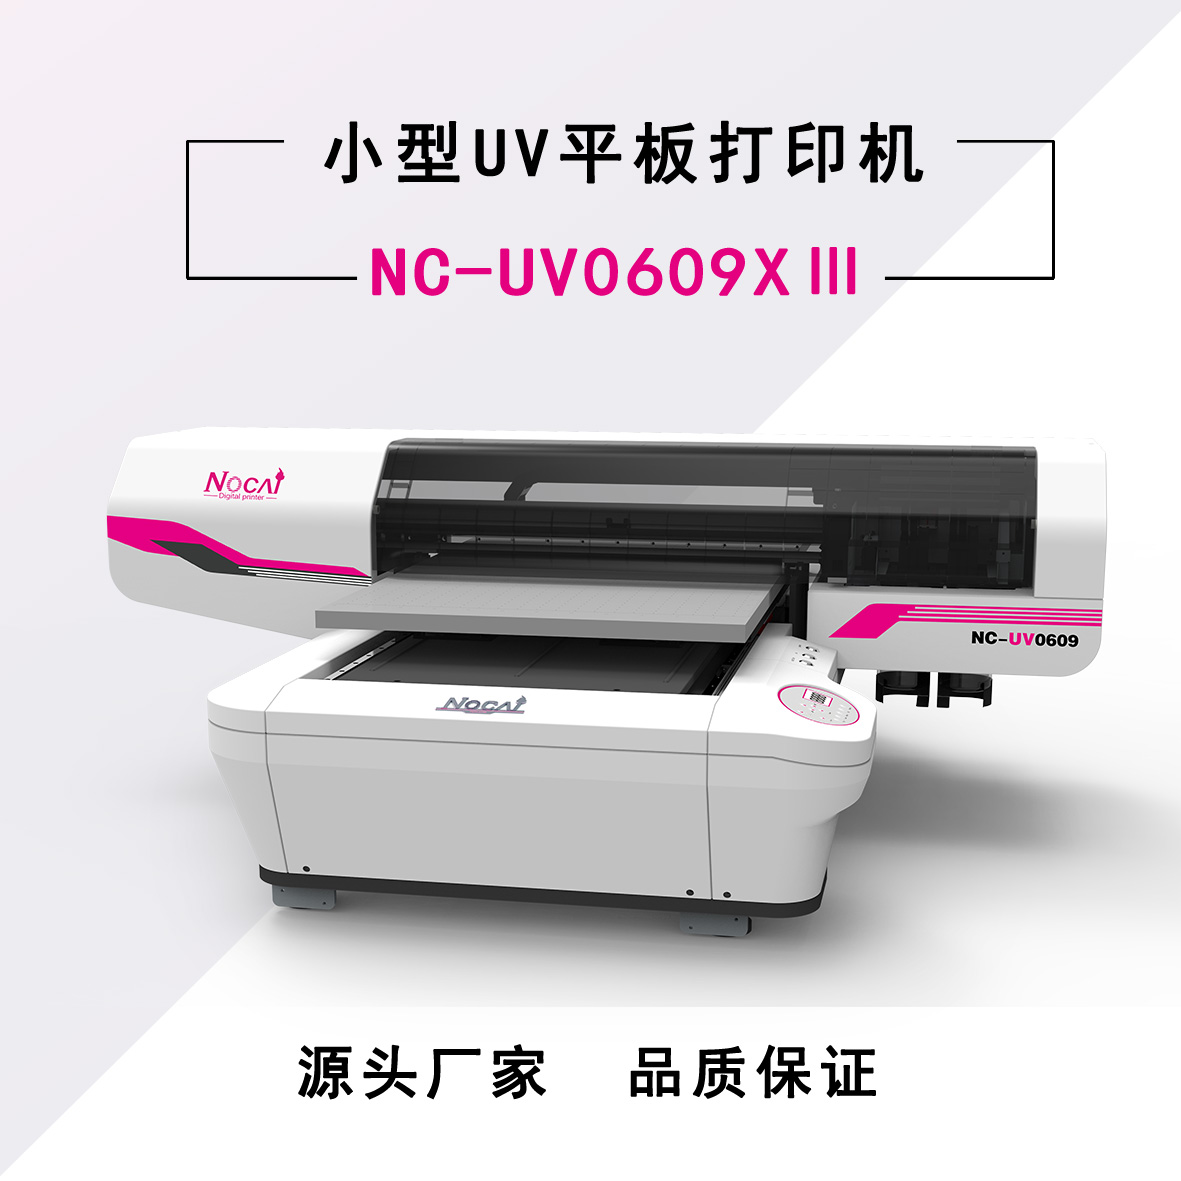 广州诺彩 UV6090 UV打印机厂家